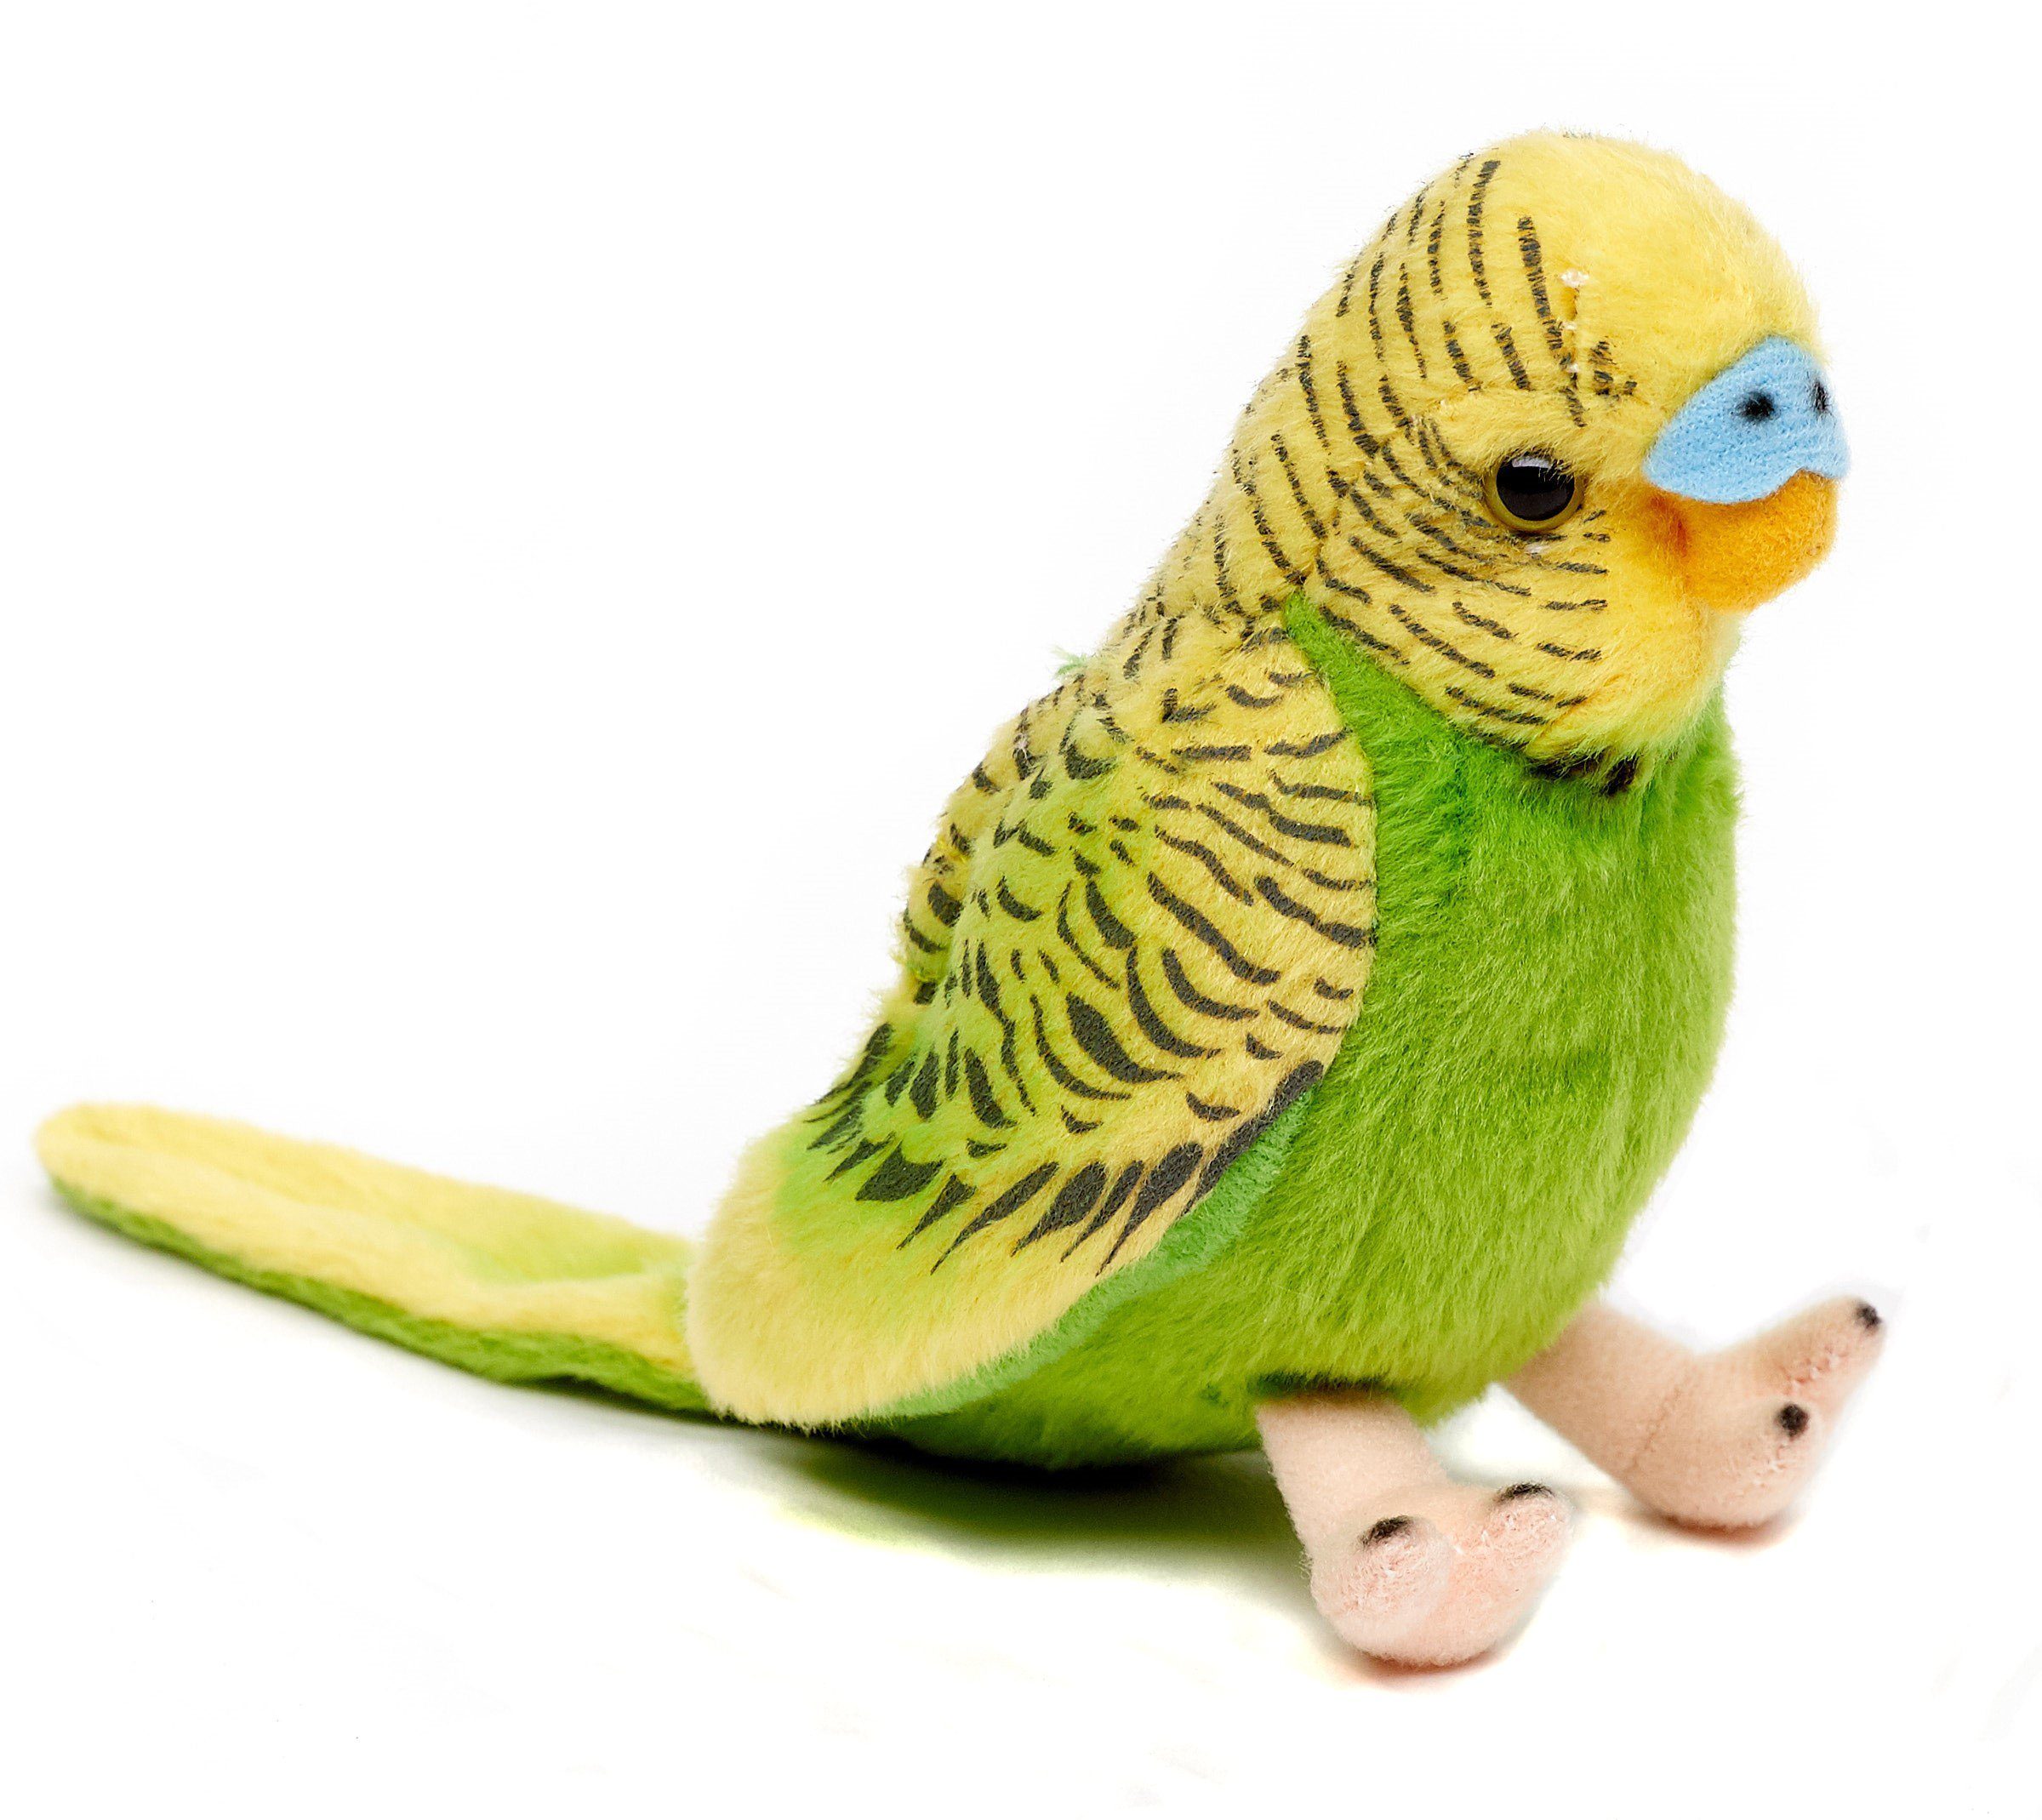 Uni-Toys Kuscheltier Wellensittich ohne Stimme, 12cm - blau/grün - Plüsch-Vogel, Plüschtier, zu 100 % recyceltes Füllmaterial